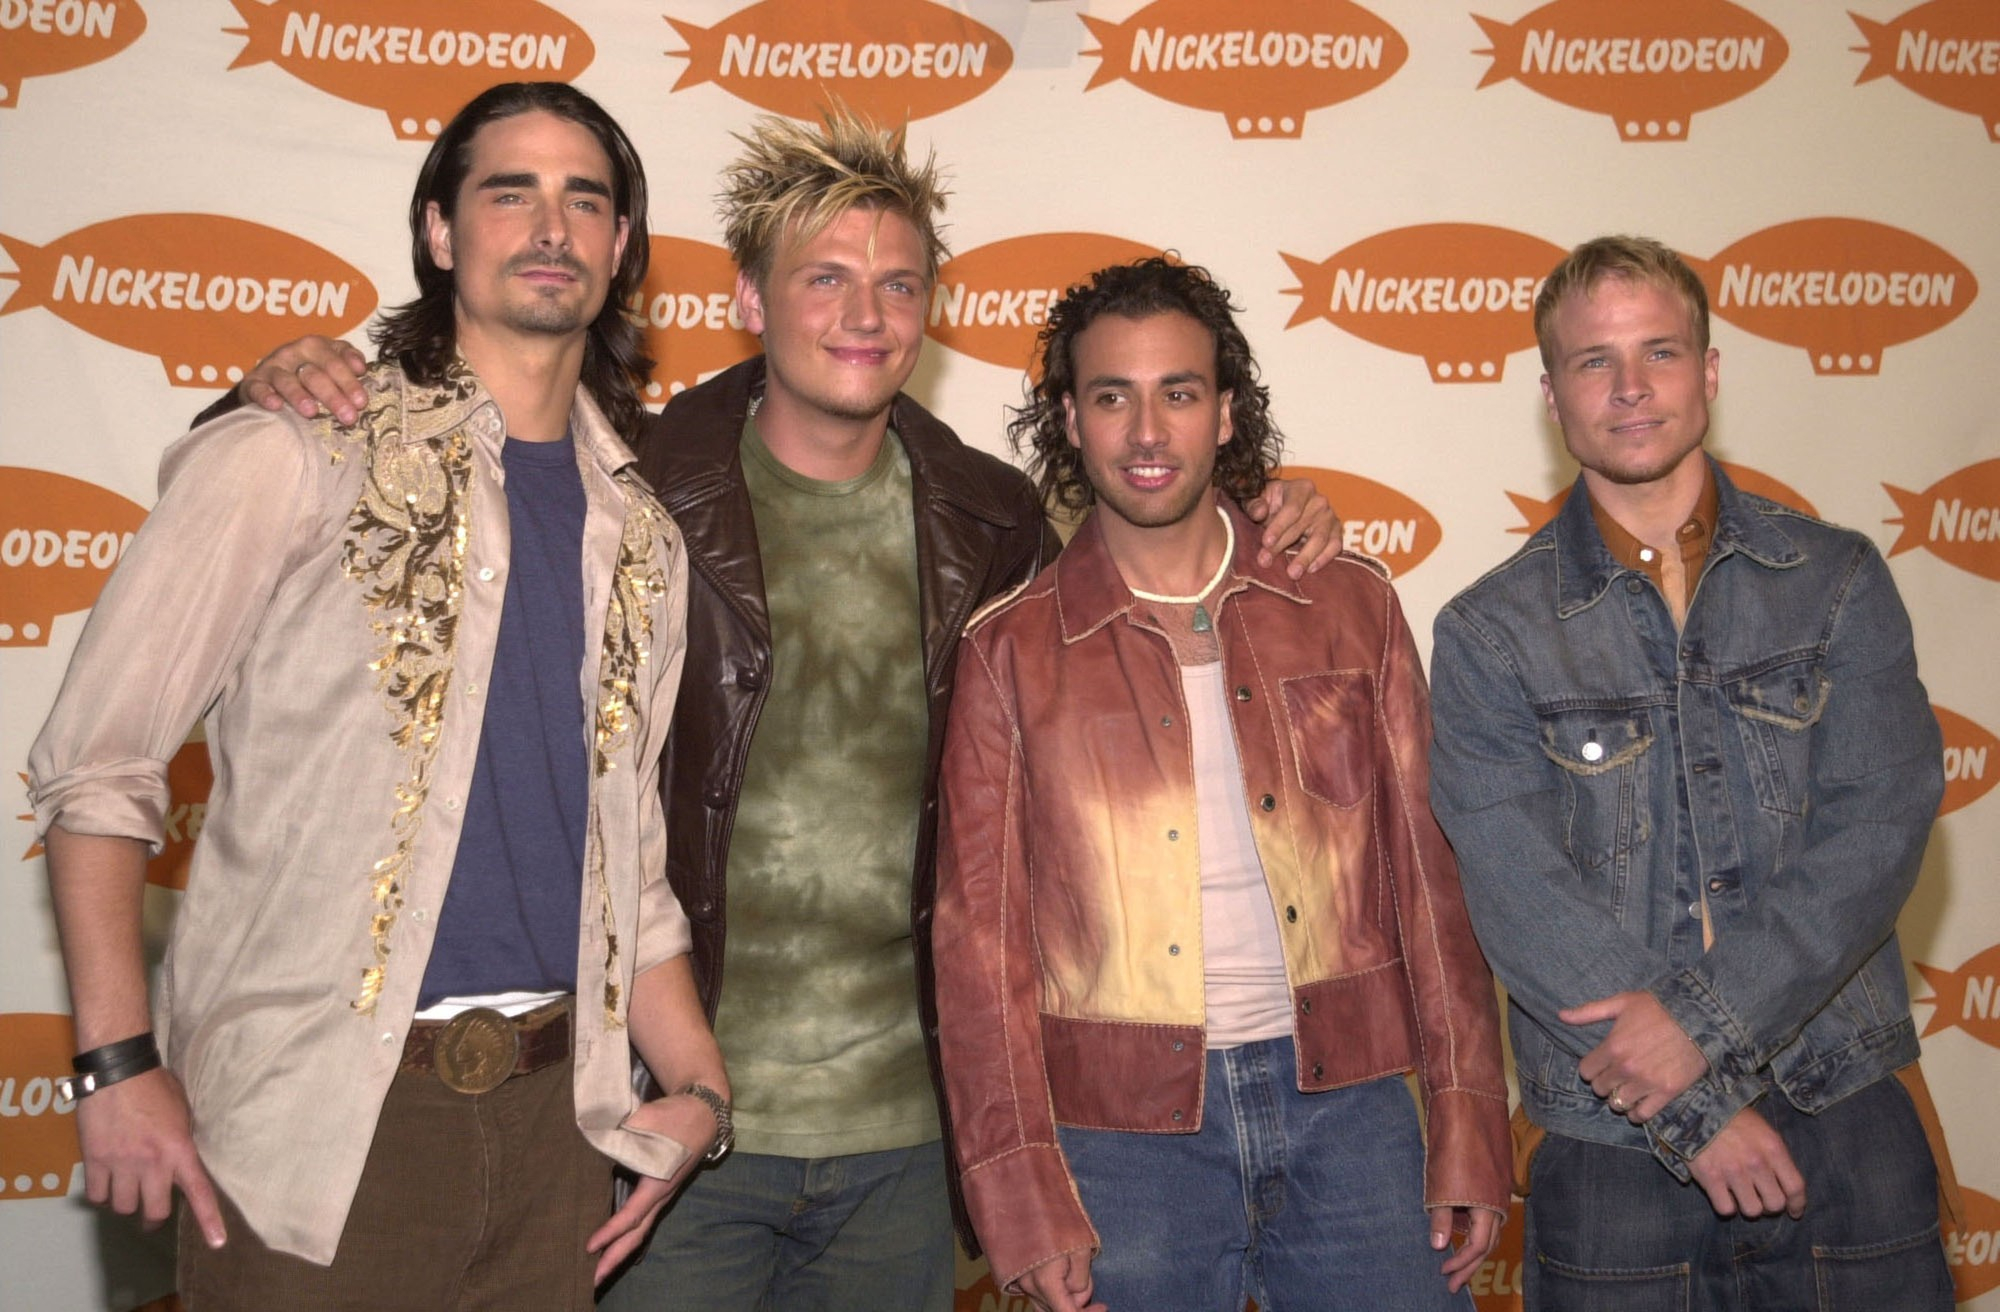 Группа Backstreet Boys: как изменились кумиры 90-х (фото)